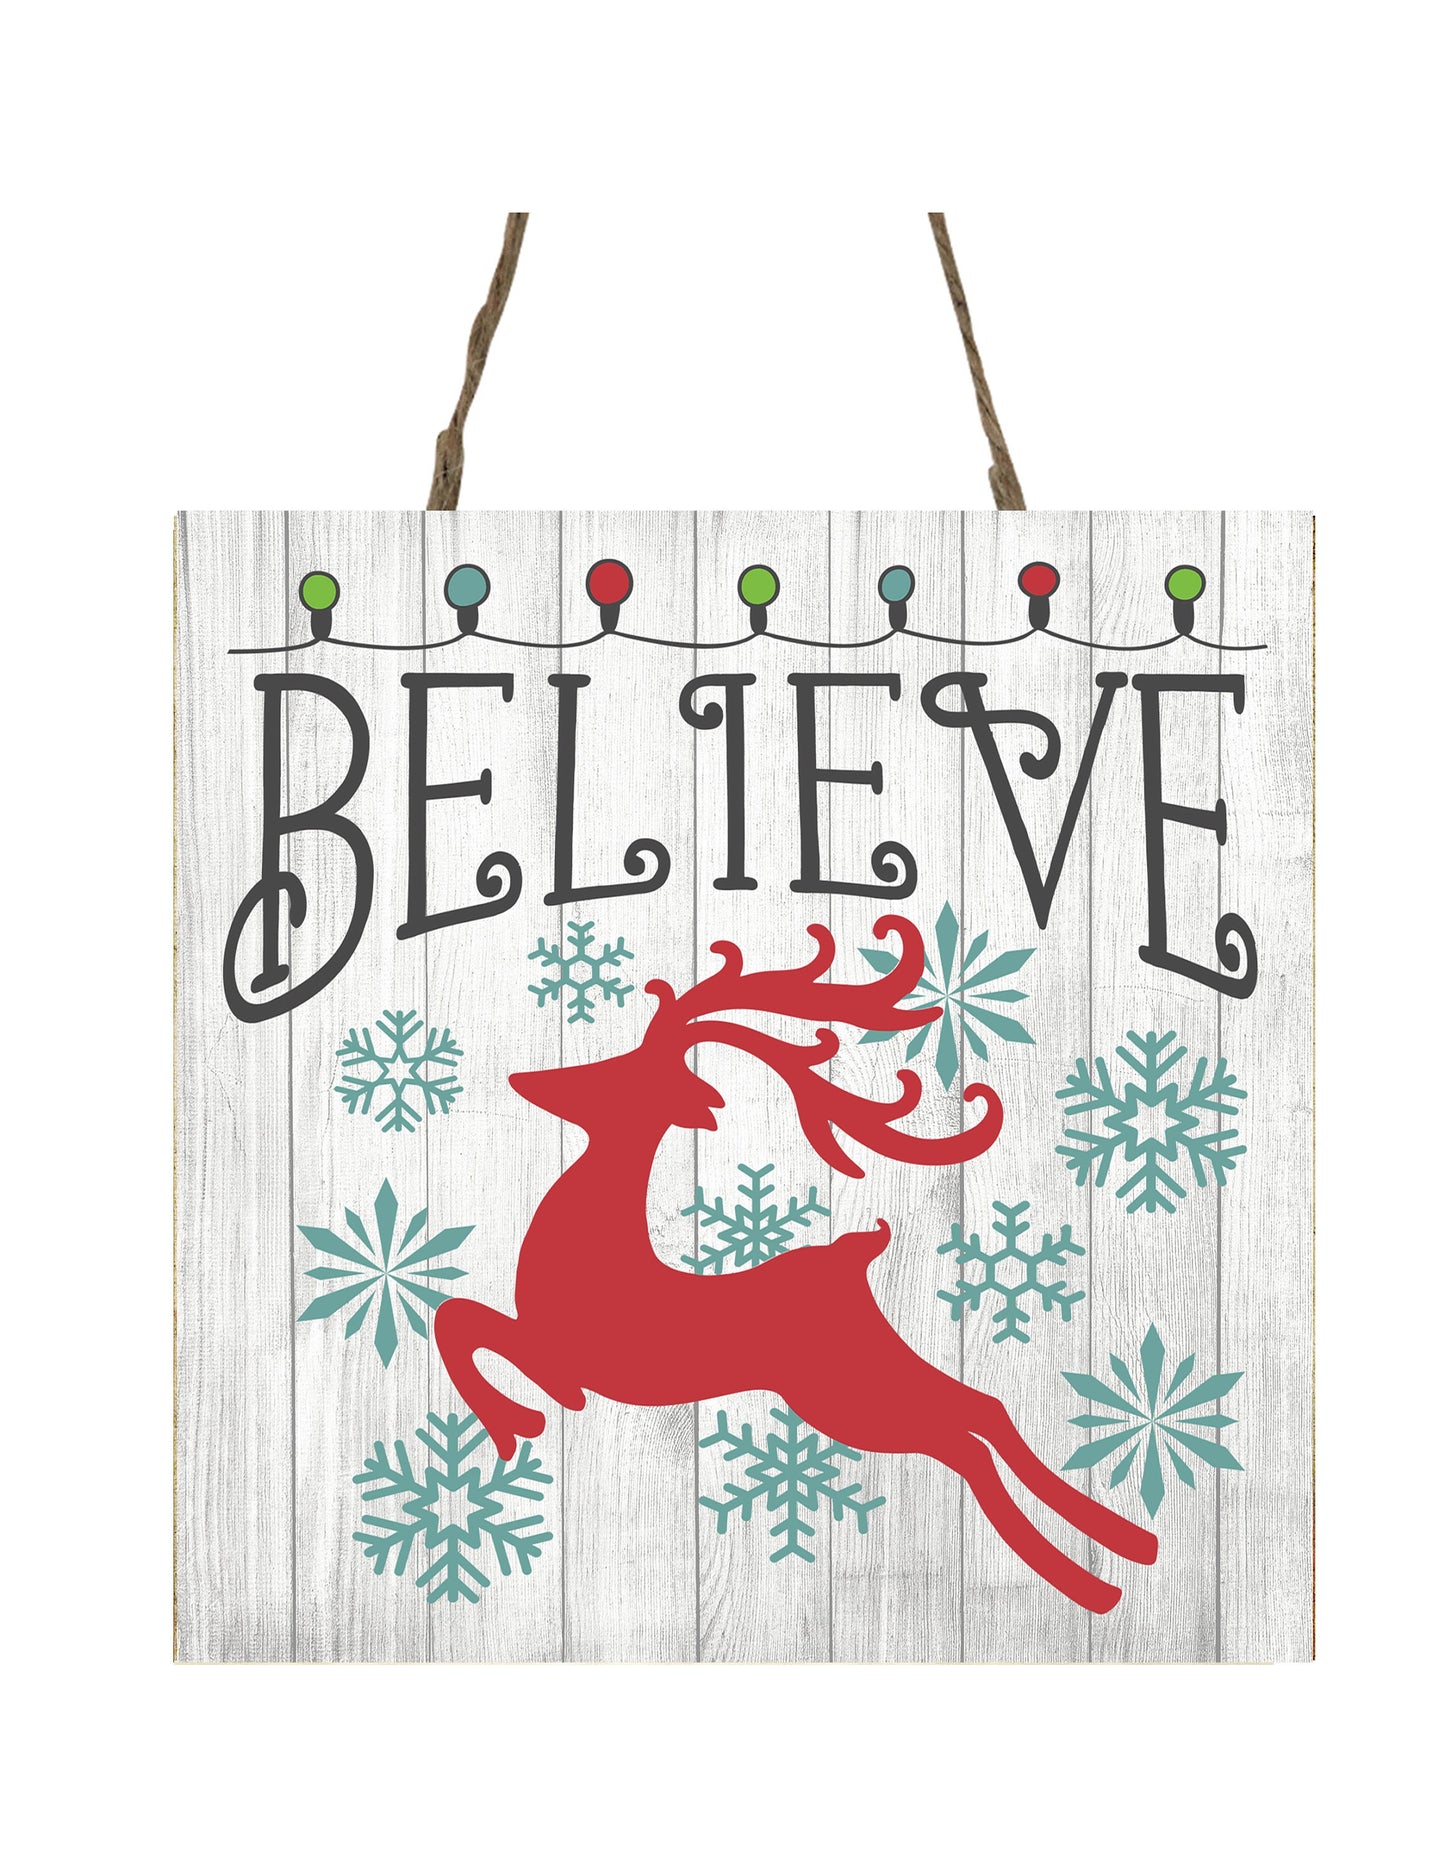 Red Reindeer Believe Printed Handmade Wood Christmas Ornament Mini Sign